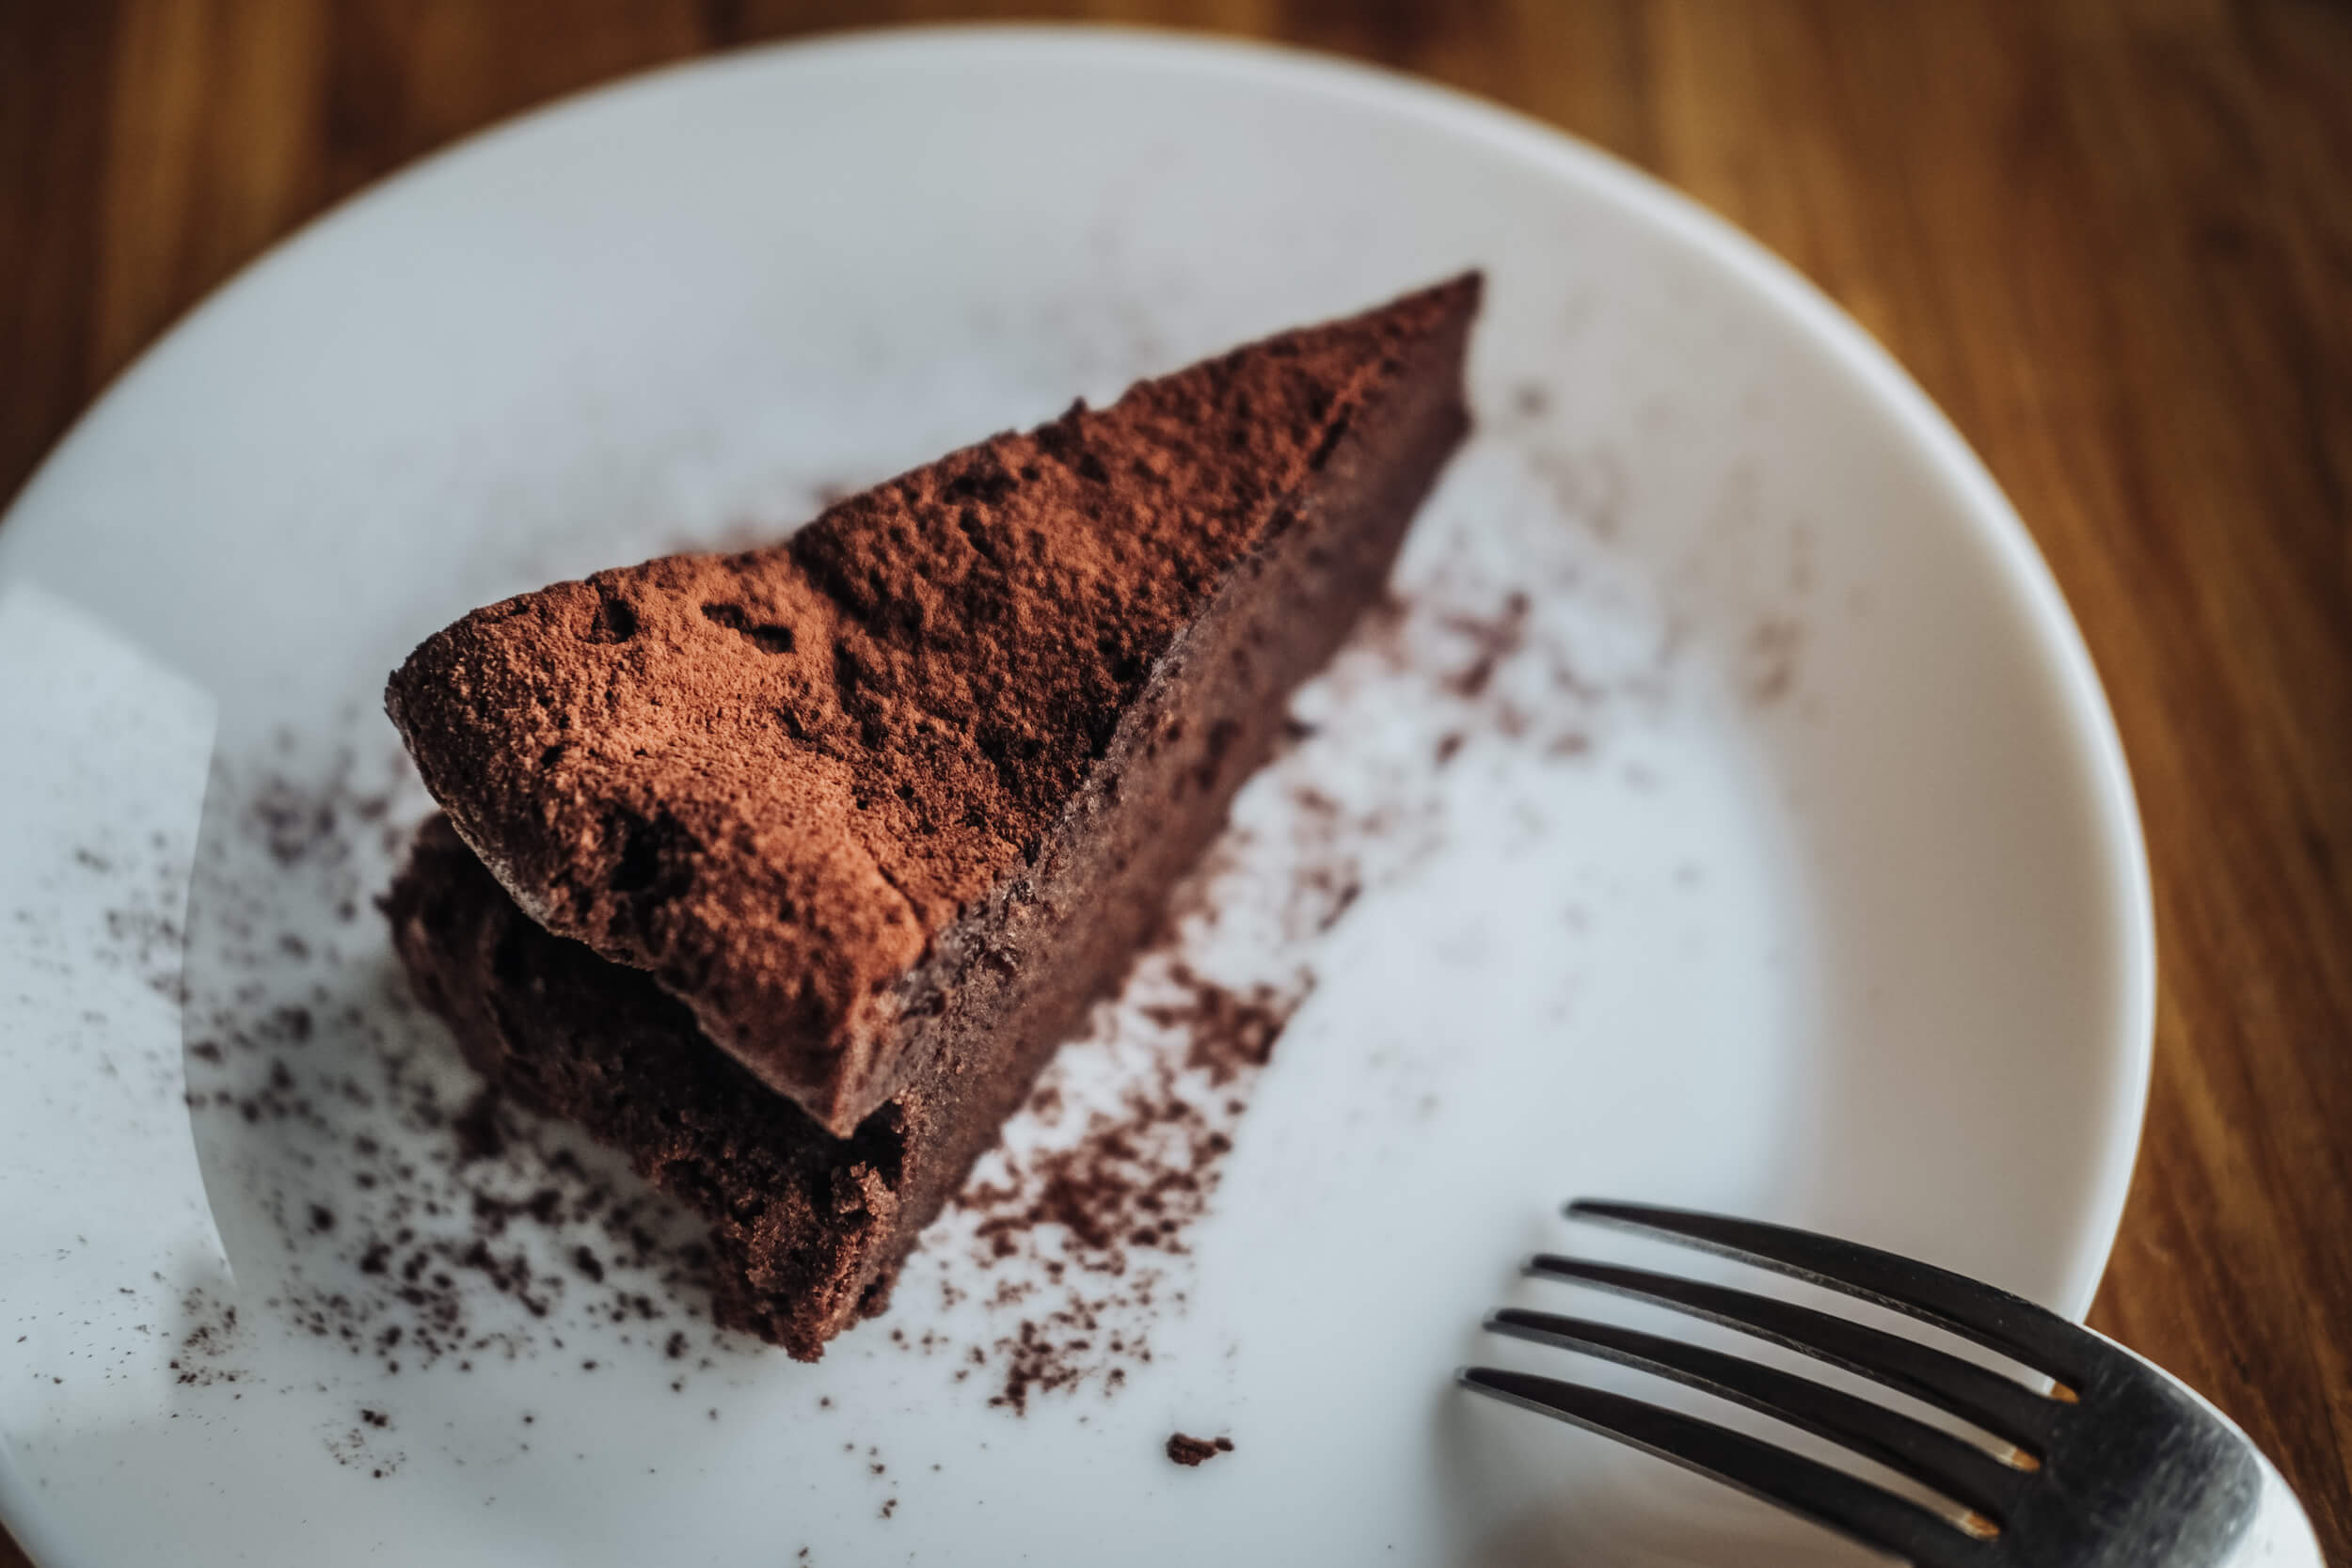 L’étrange gâteau au chocolat du Professeur Mechoulam peut-il vraiment soigner 85% des maladies ?